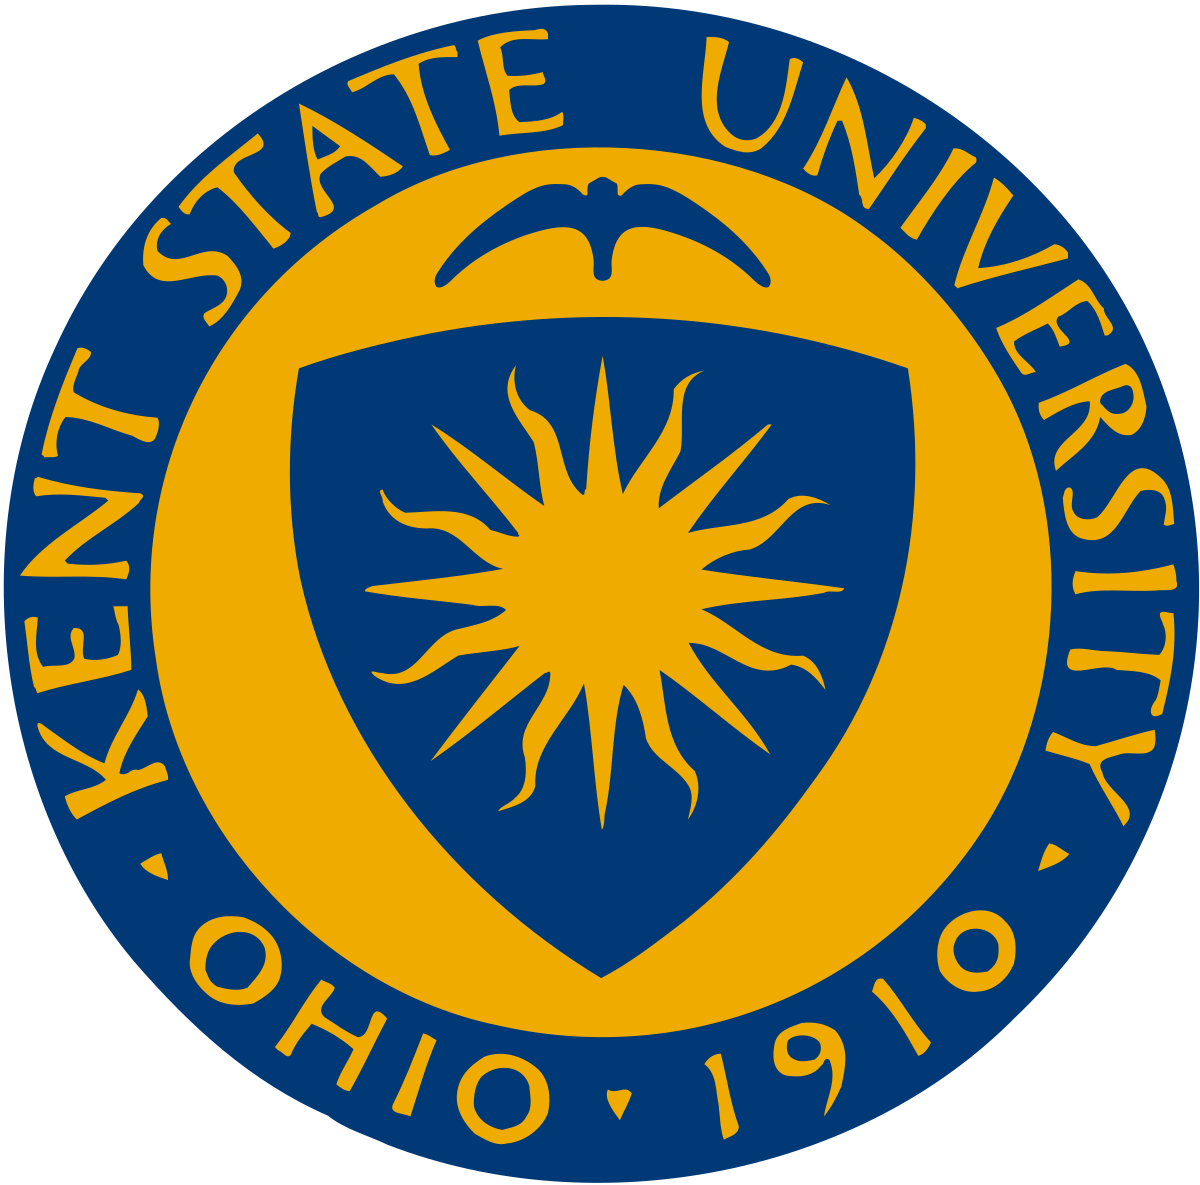 The Kent State University Seal Logo